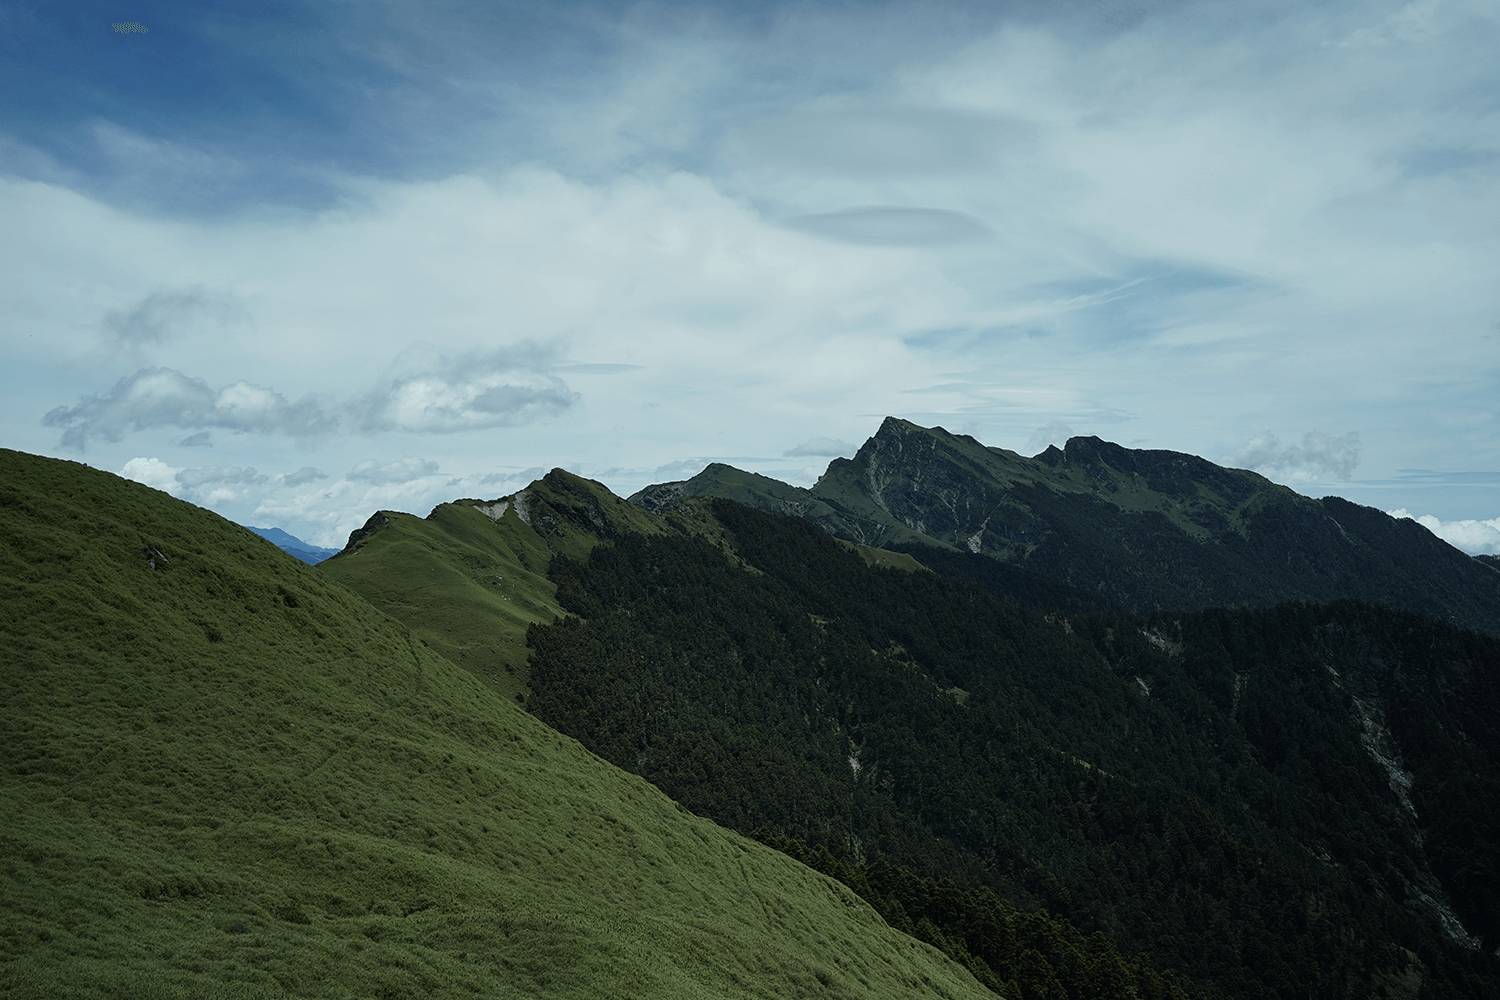 Mount Qilai North Peak